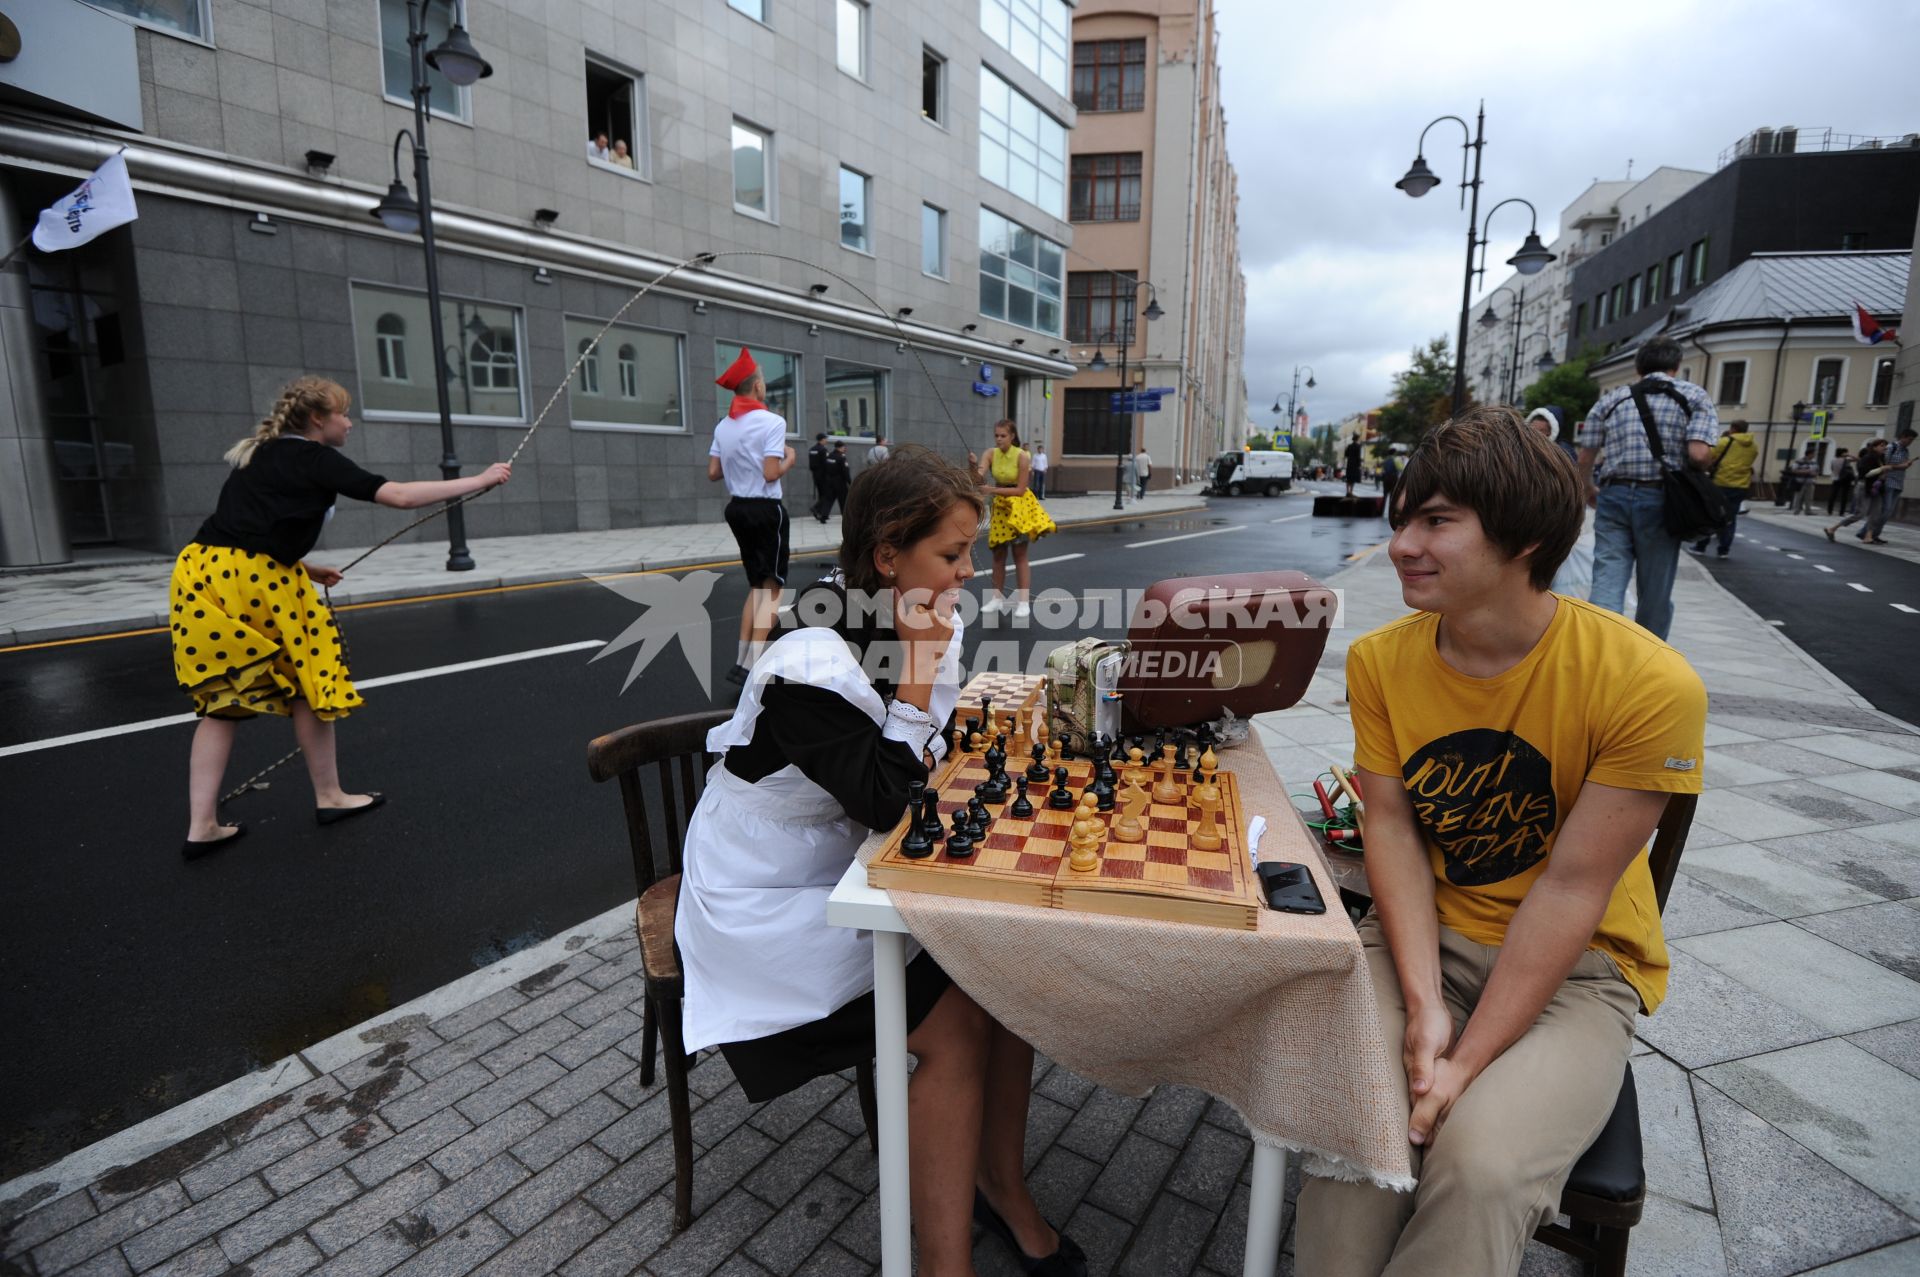 Торжественное открытие пешеходной зоны на улице Пятницкая. На снимке: молодые люди играют в шахматы.